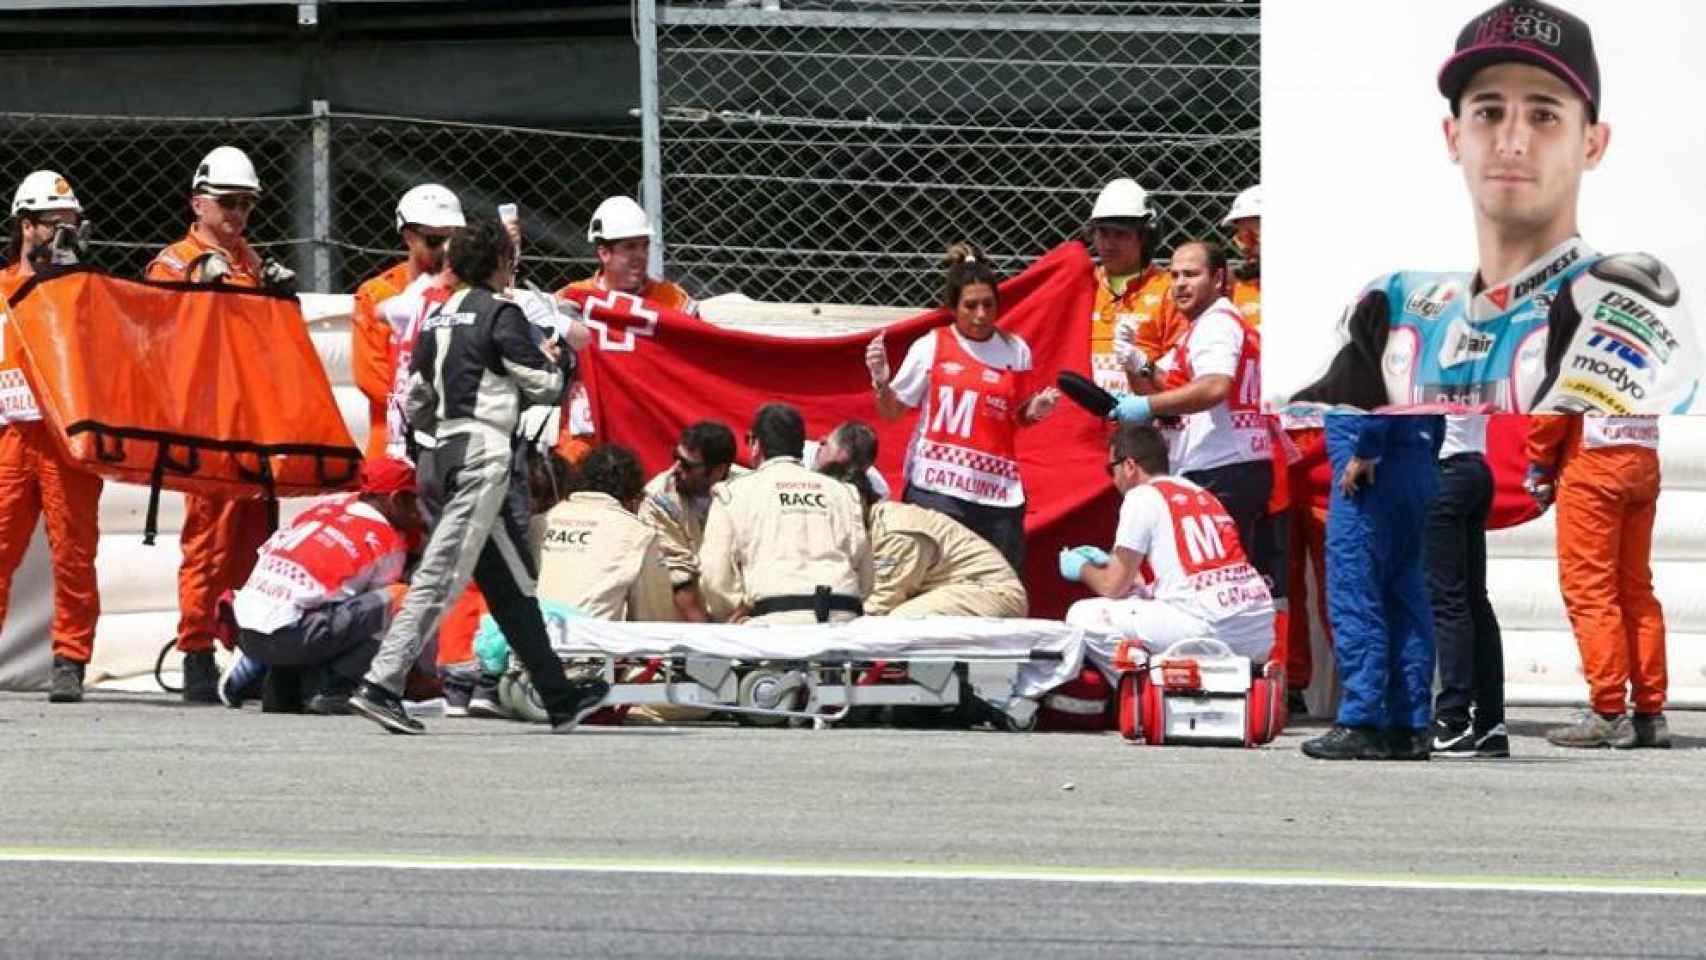 Momento del traslado de Luis Salom tras su accidente en Montmeló.